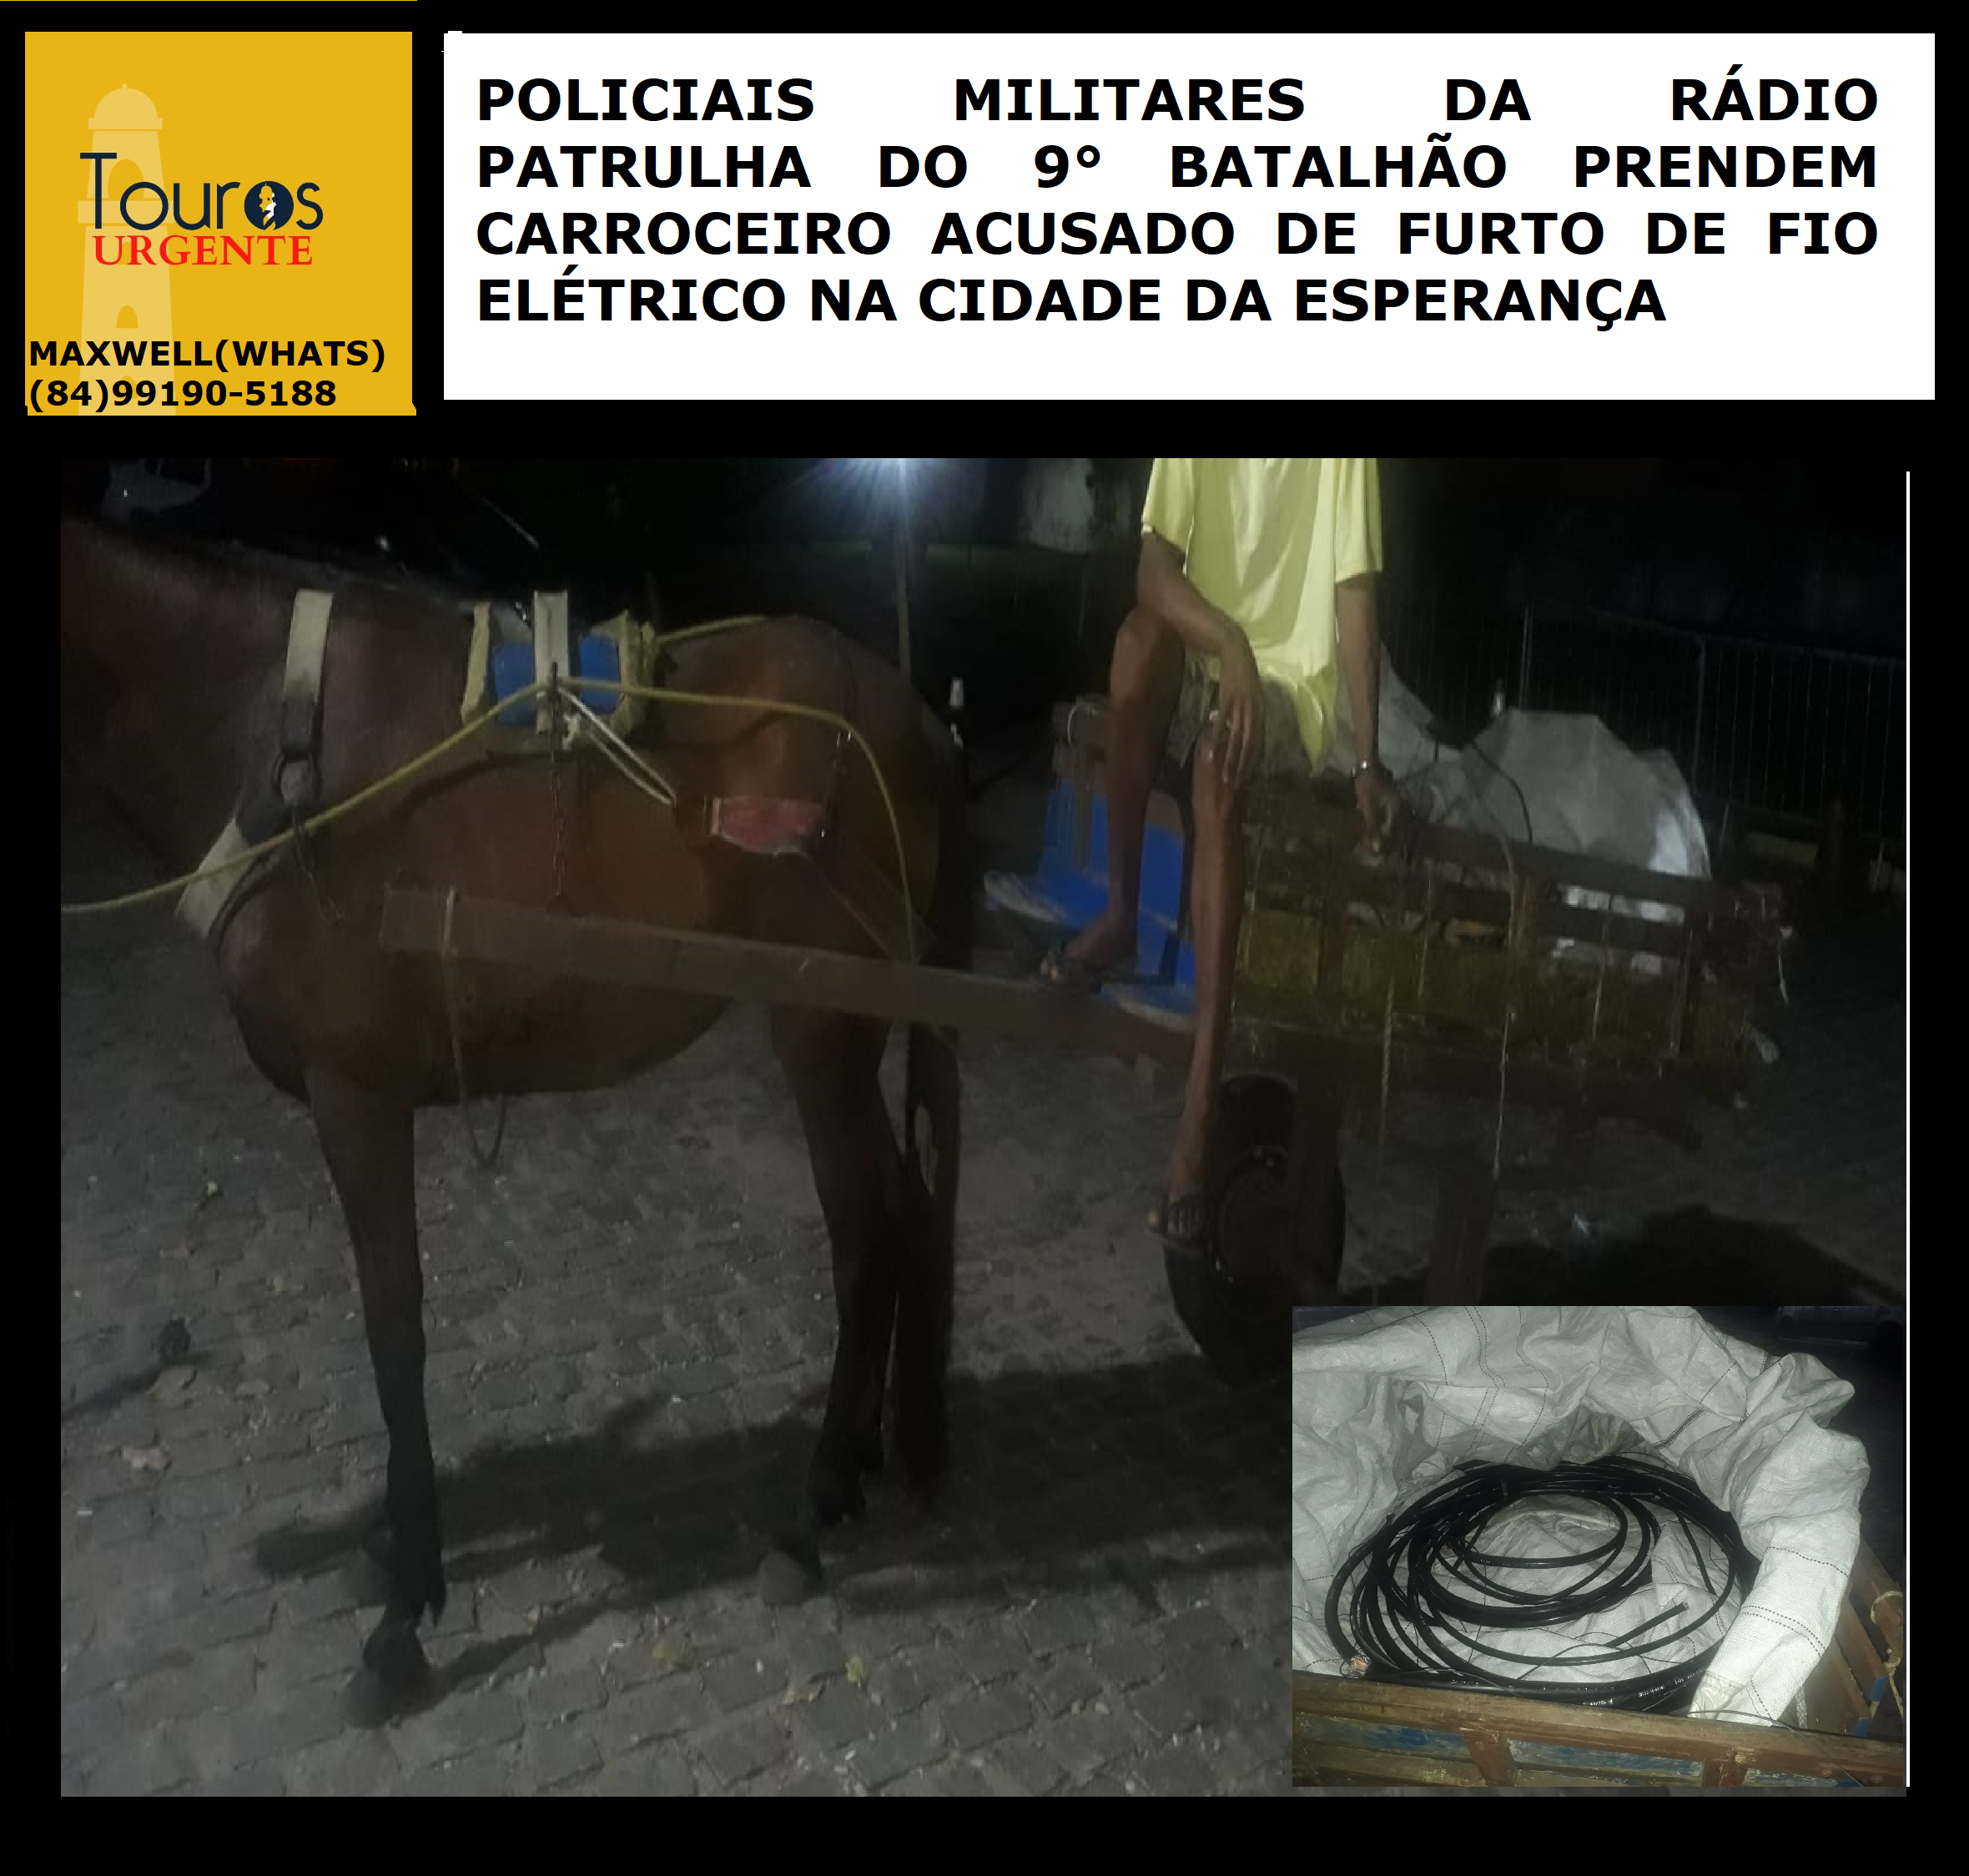 ​POLICIAIS MILITARES DA RÁDIO PATRULHA DO 9° BATALHÃO PRENDEM...